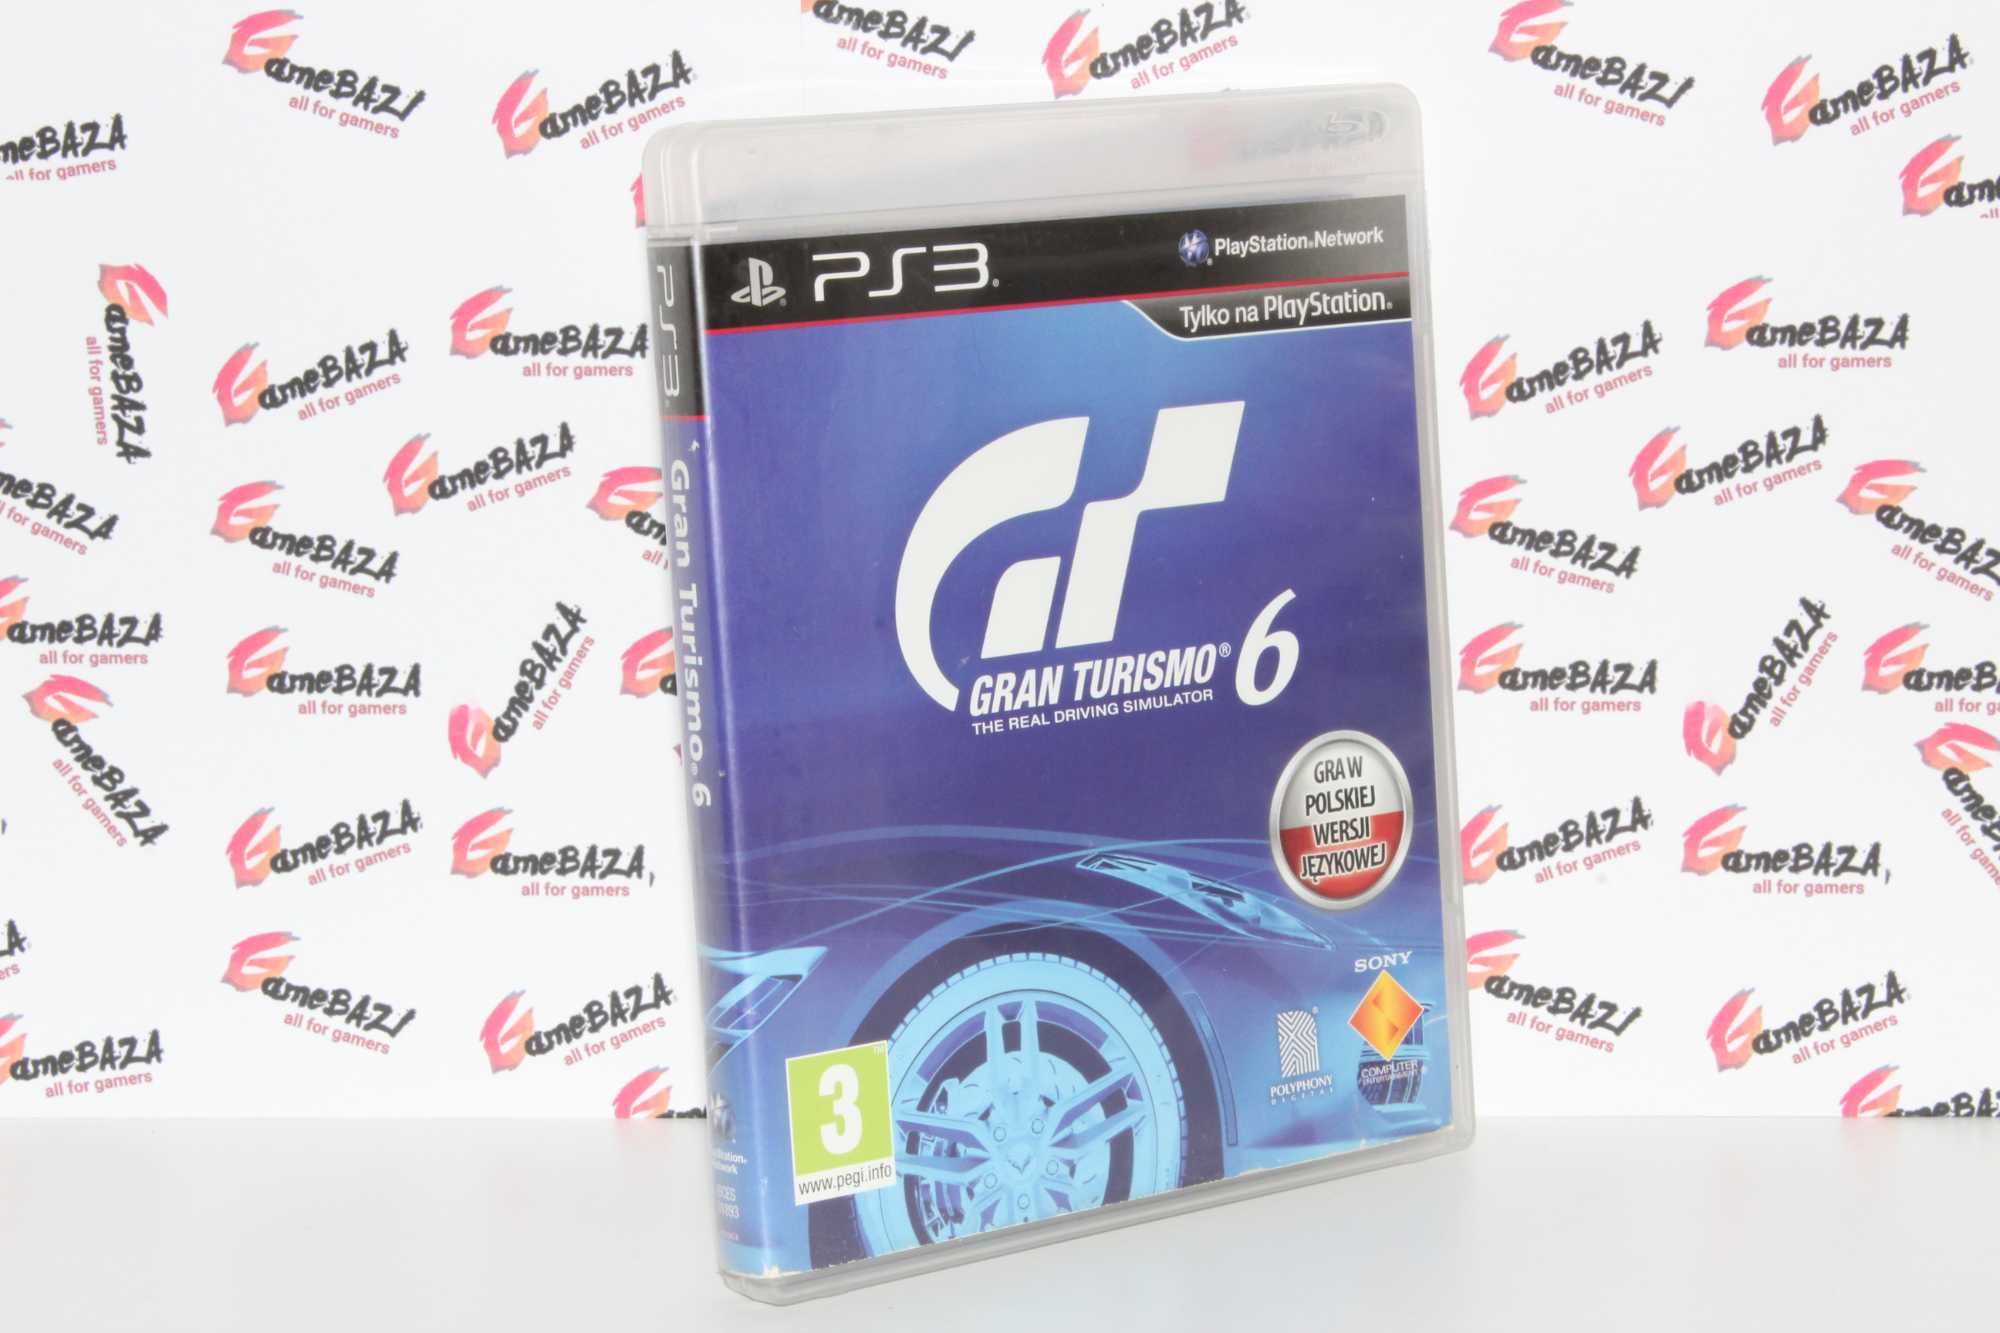 PL Gran Turismo 6 Ps3 GameBAZA